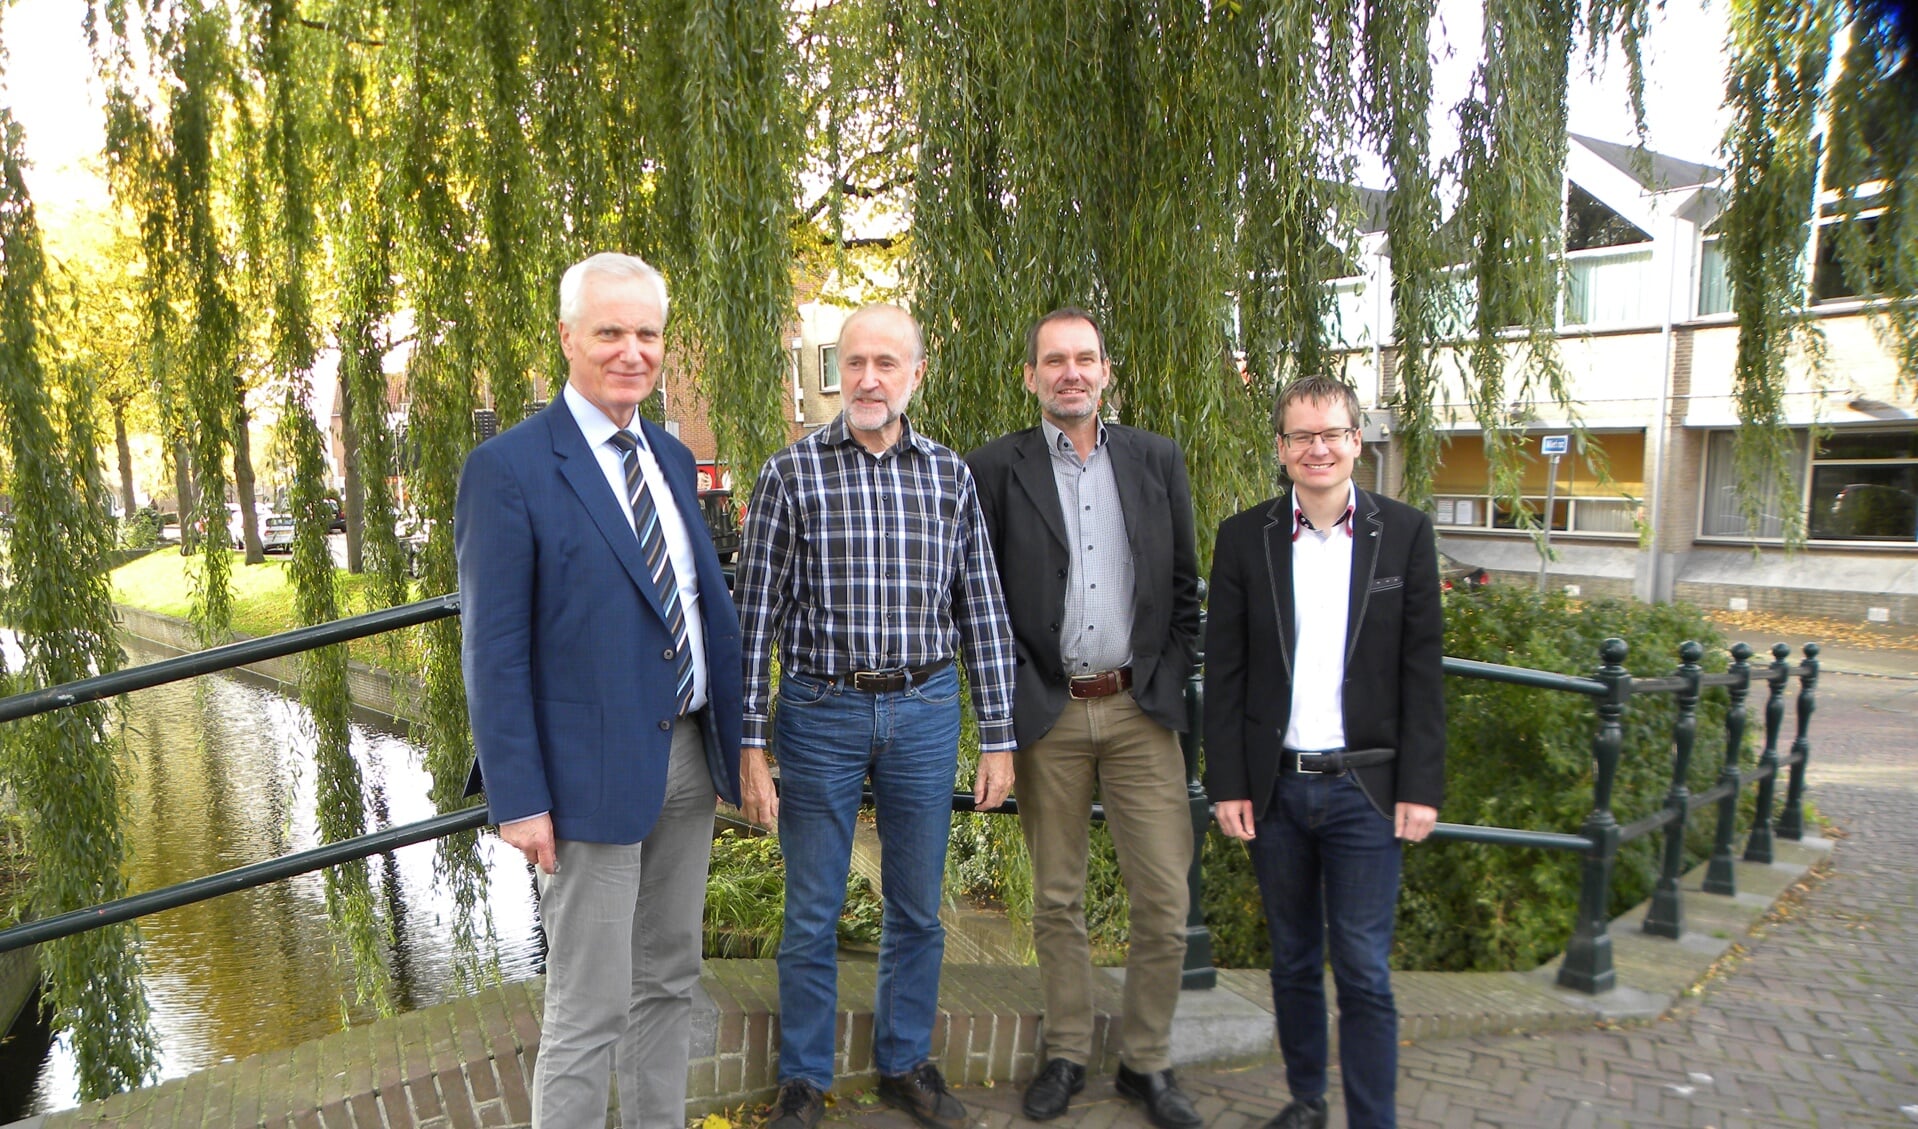 V.l.n.r.: Pieter Niemeijer, Peter Sarneel, Pieter van der Ende en Lennart Hoftijzer. | Foto: CvdS.